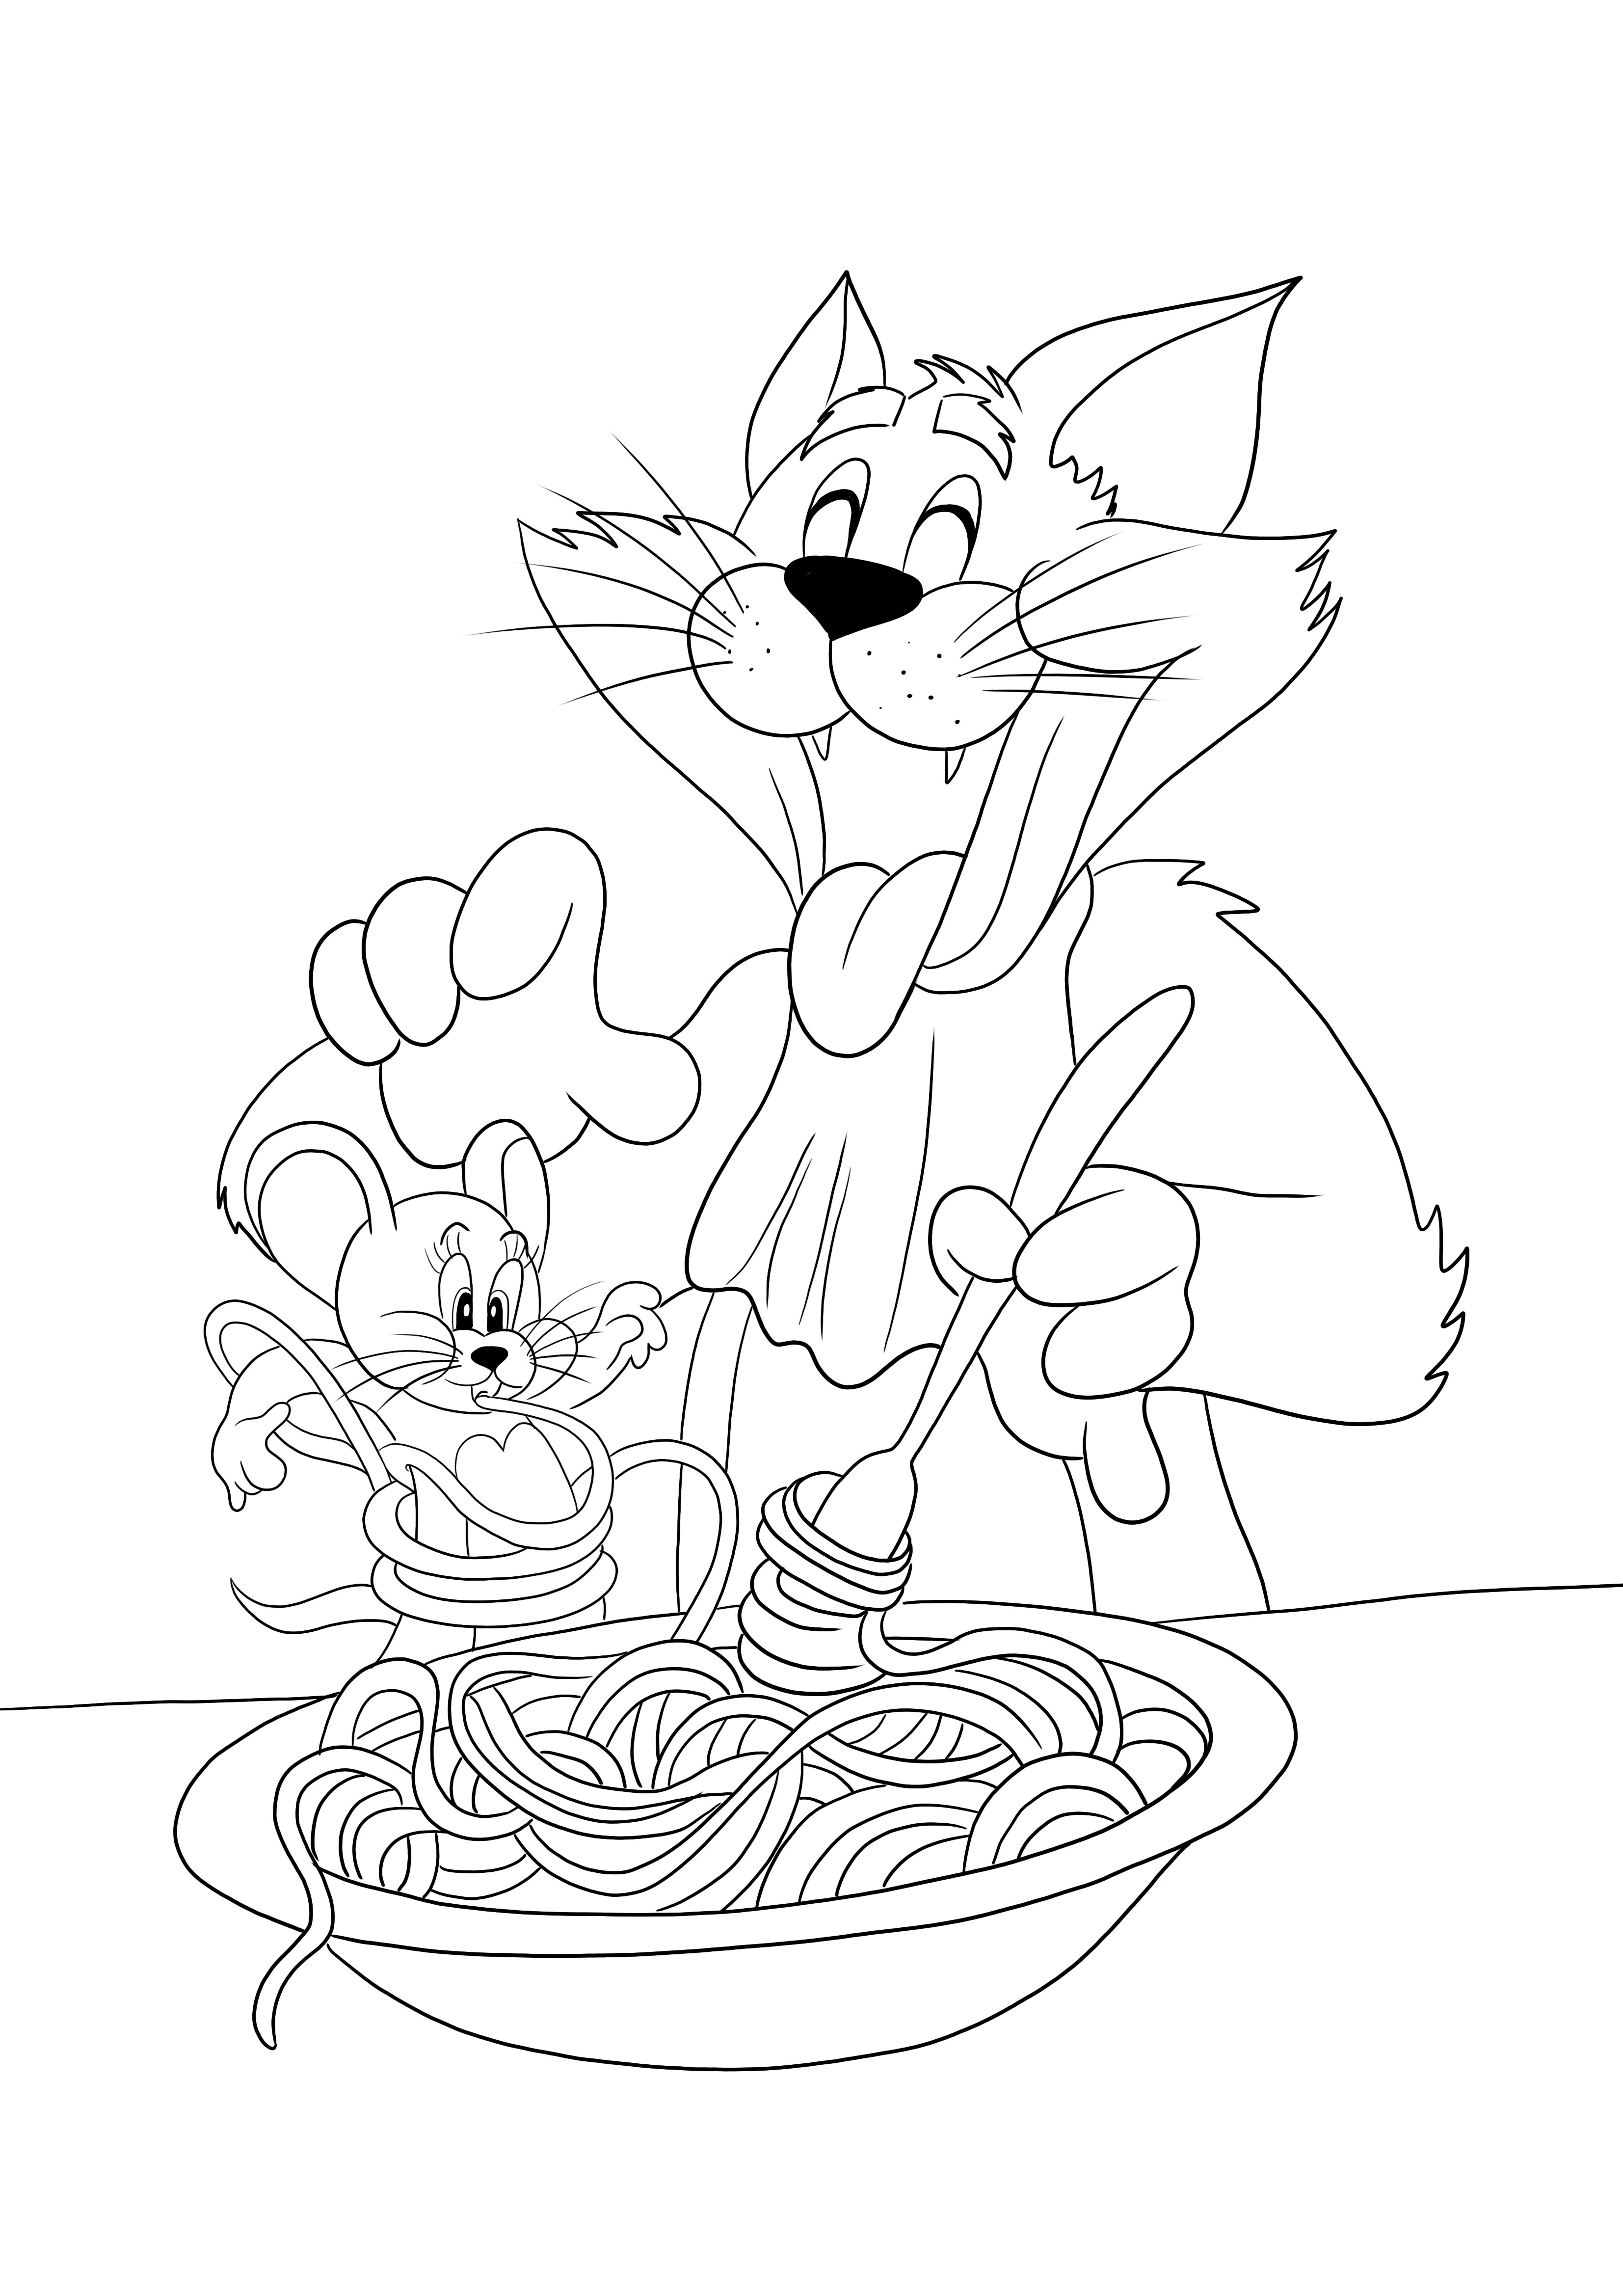 Tom erişte yiyor ve Jerry - renklendirmeye hazır komik bir çıktı